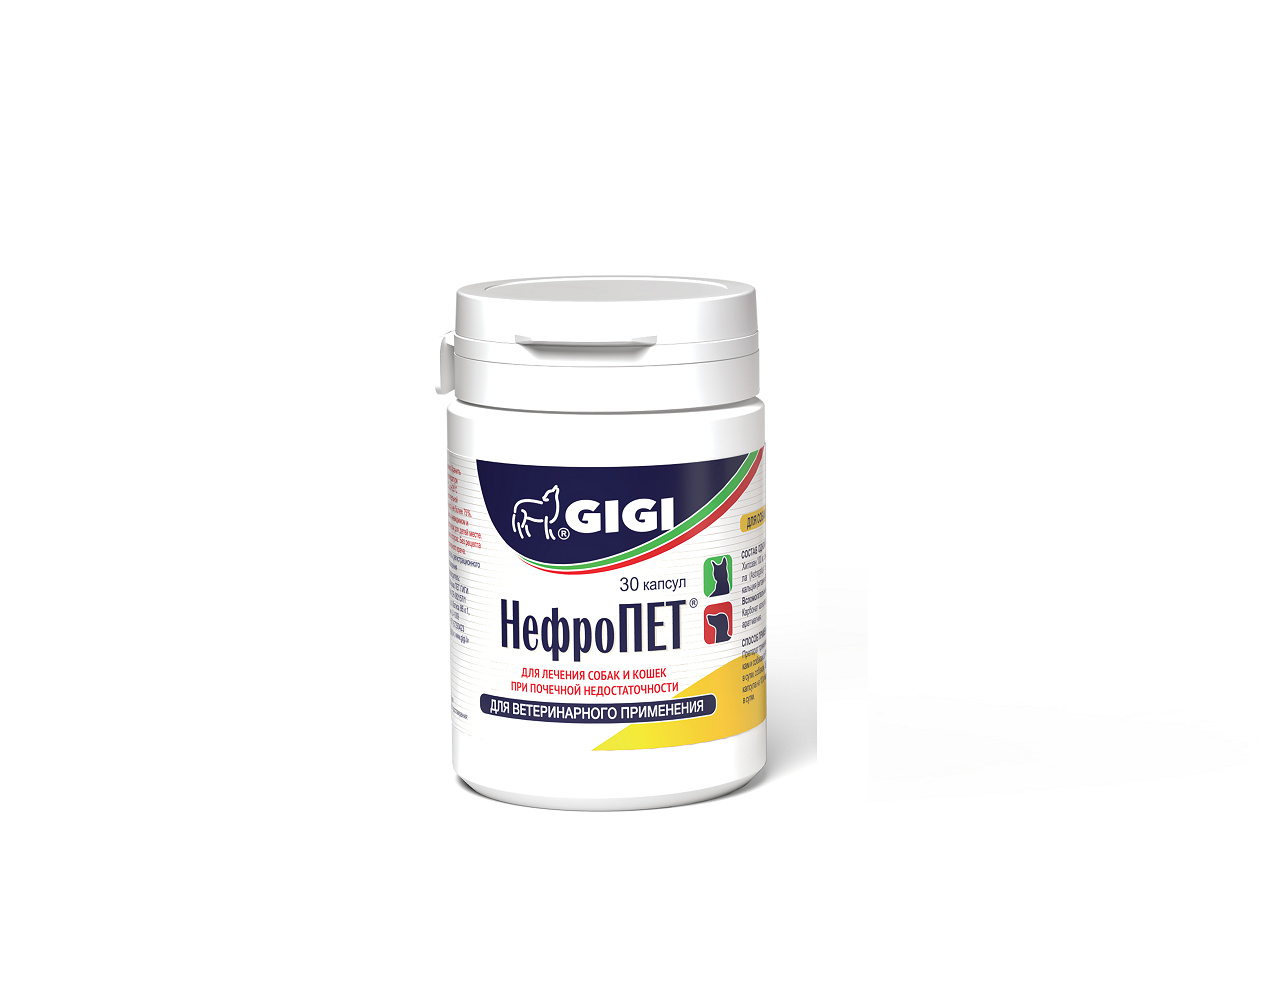 GIGI GIGI нефроПет (30 табл.) gigi gigi да ба релакс плюс 30 для профилактики стресса и стабилизации нервной системы 30 таблеток 62 г